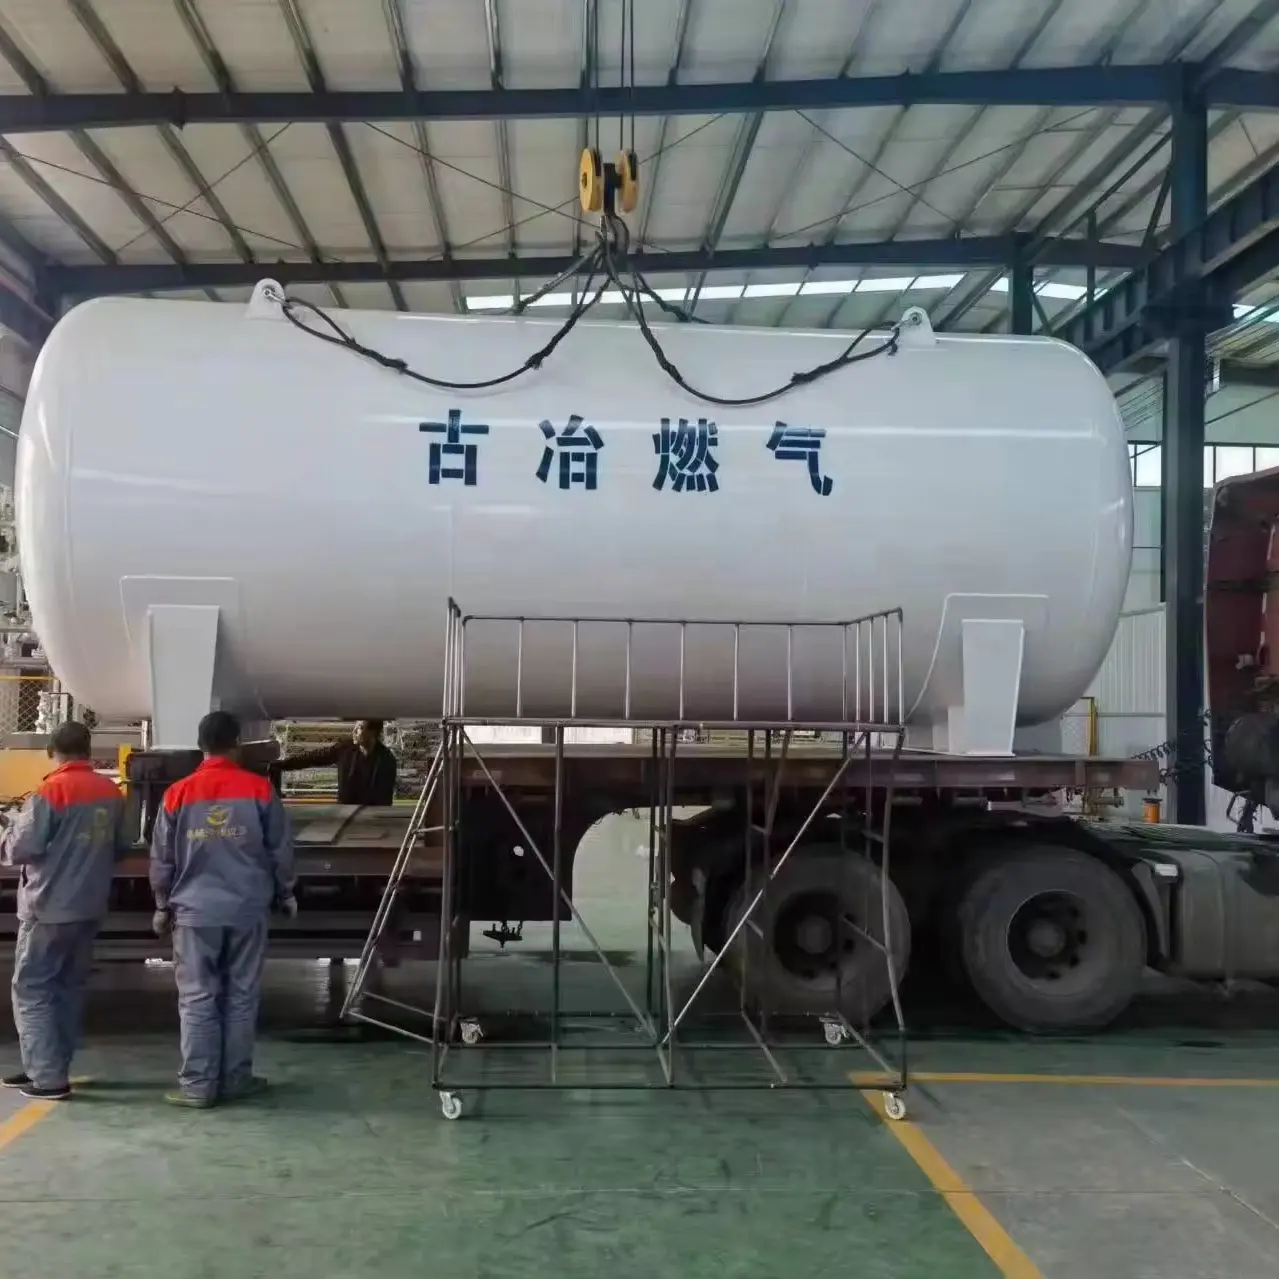 ASME-Standard 20-Fuß-ISO-Tankcontainer für Flüssiggasaufbewahrung und Transport